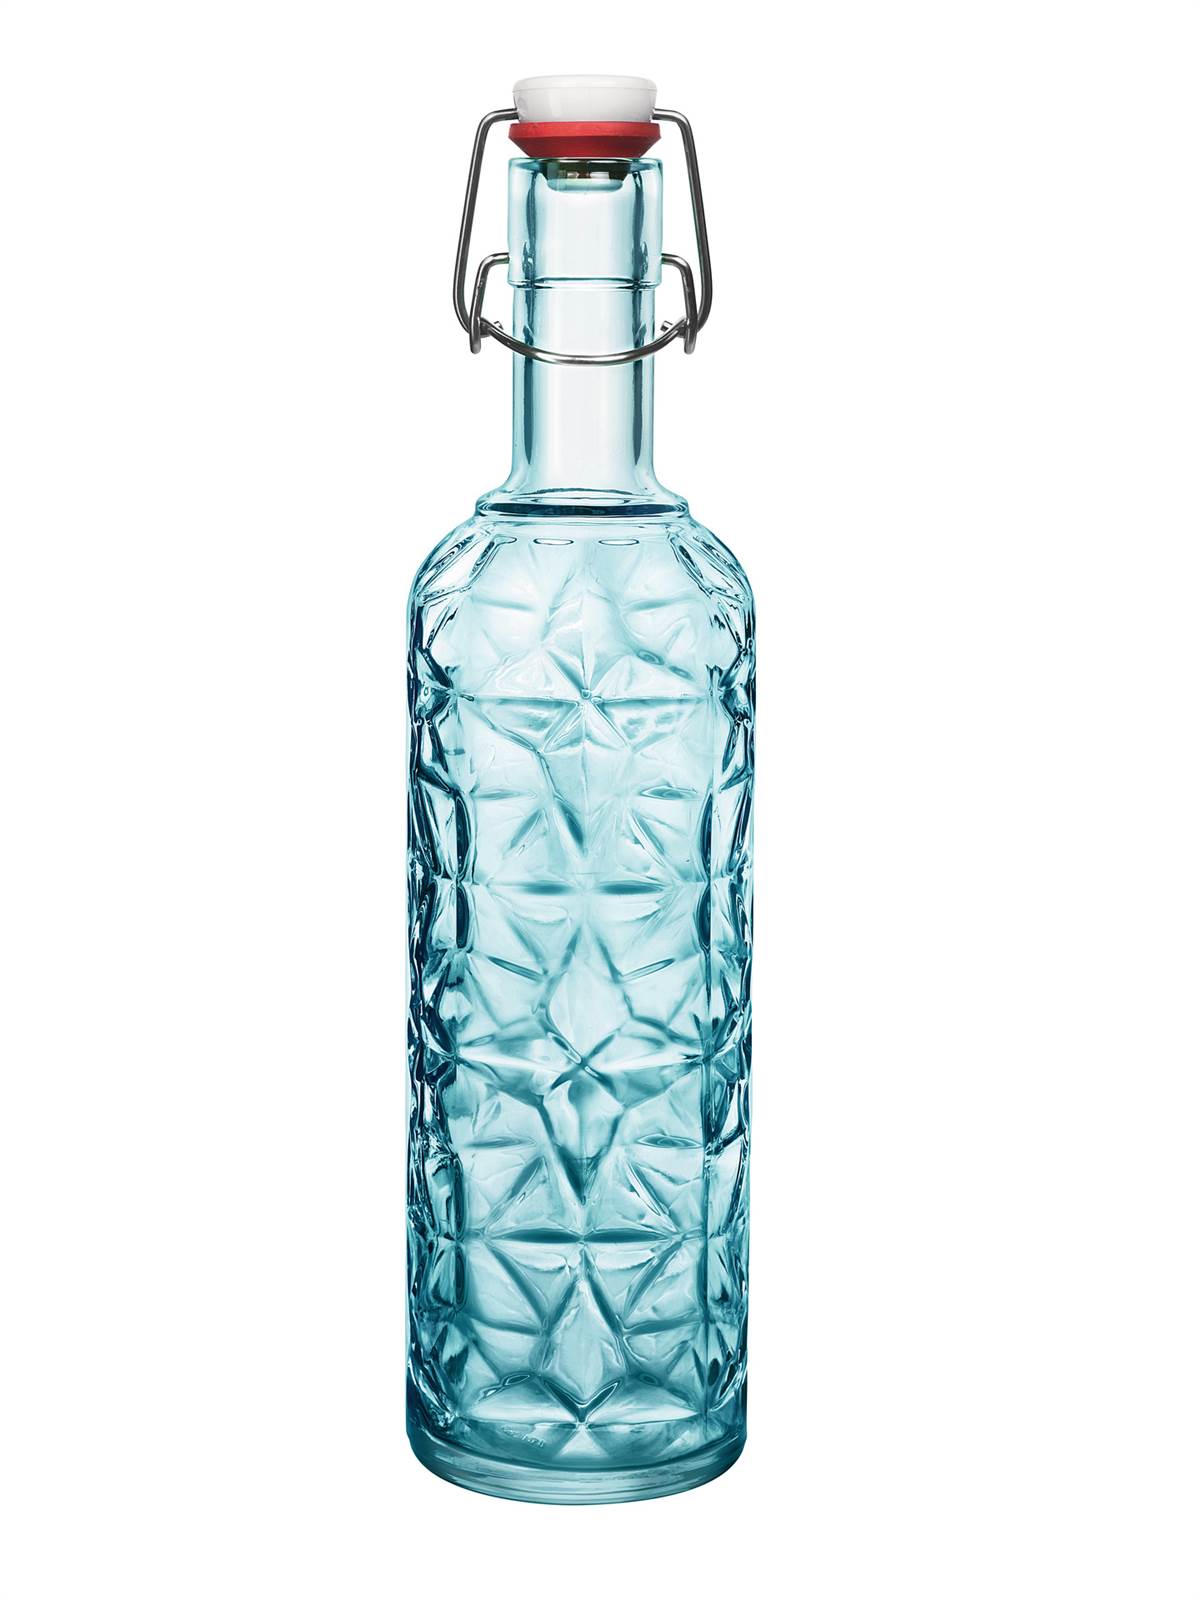 בקבוק מהודר ORIENTE סגירה הרמטית 1 ליטר - צבע כחול